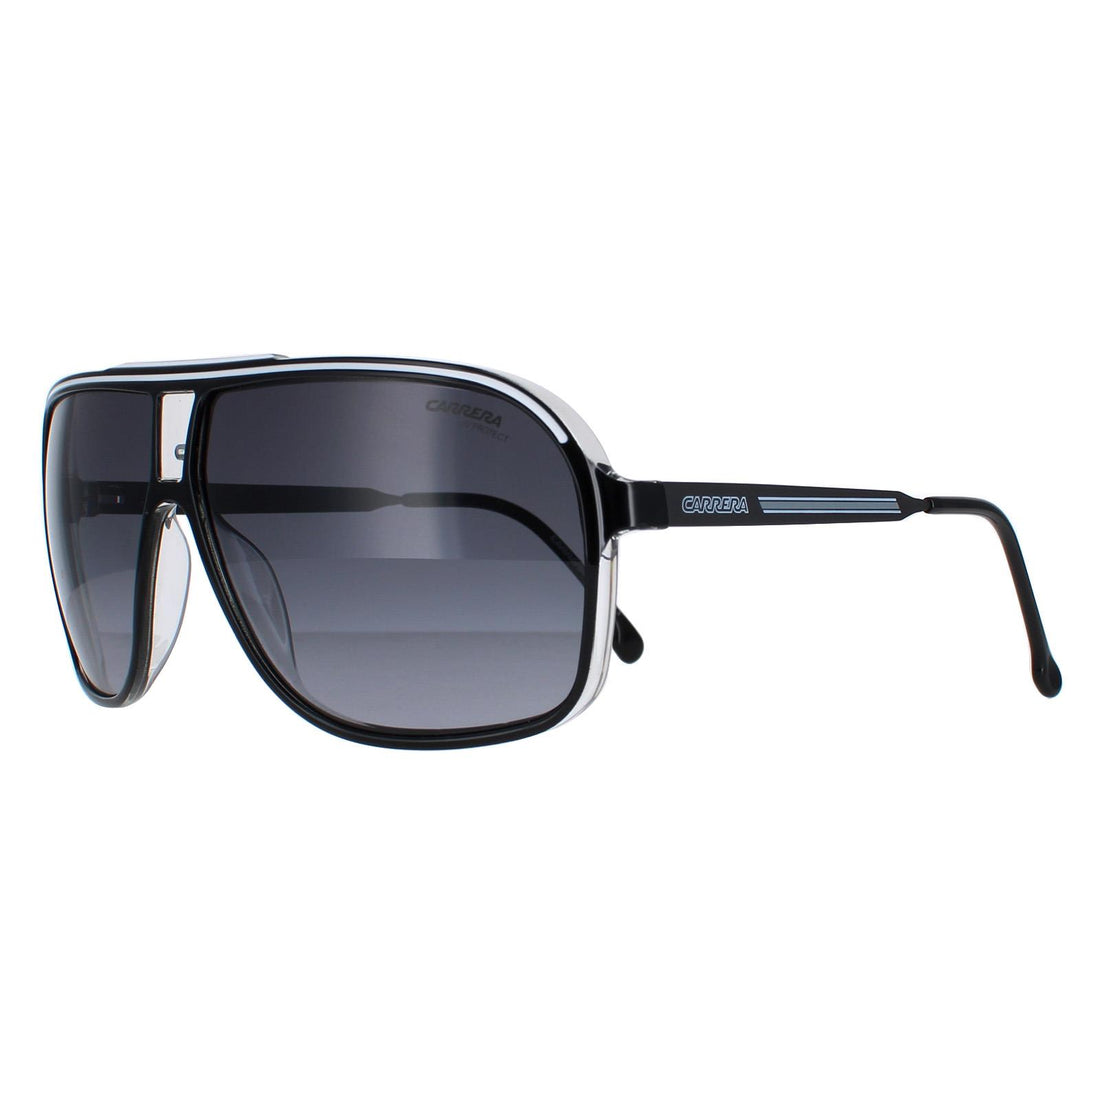 Carrera Sunglasses Grand Prix 3 80S/9O Black and White Grey Gradient